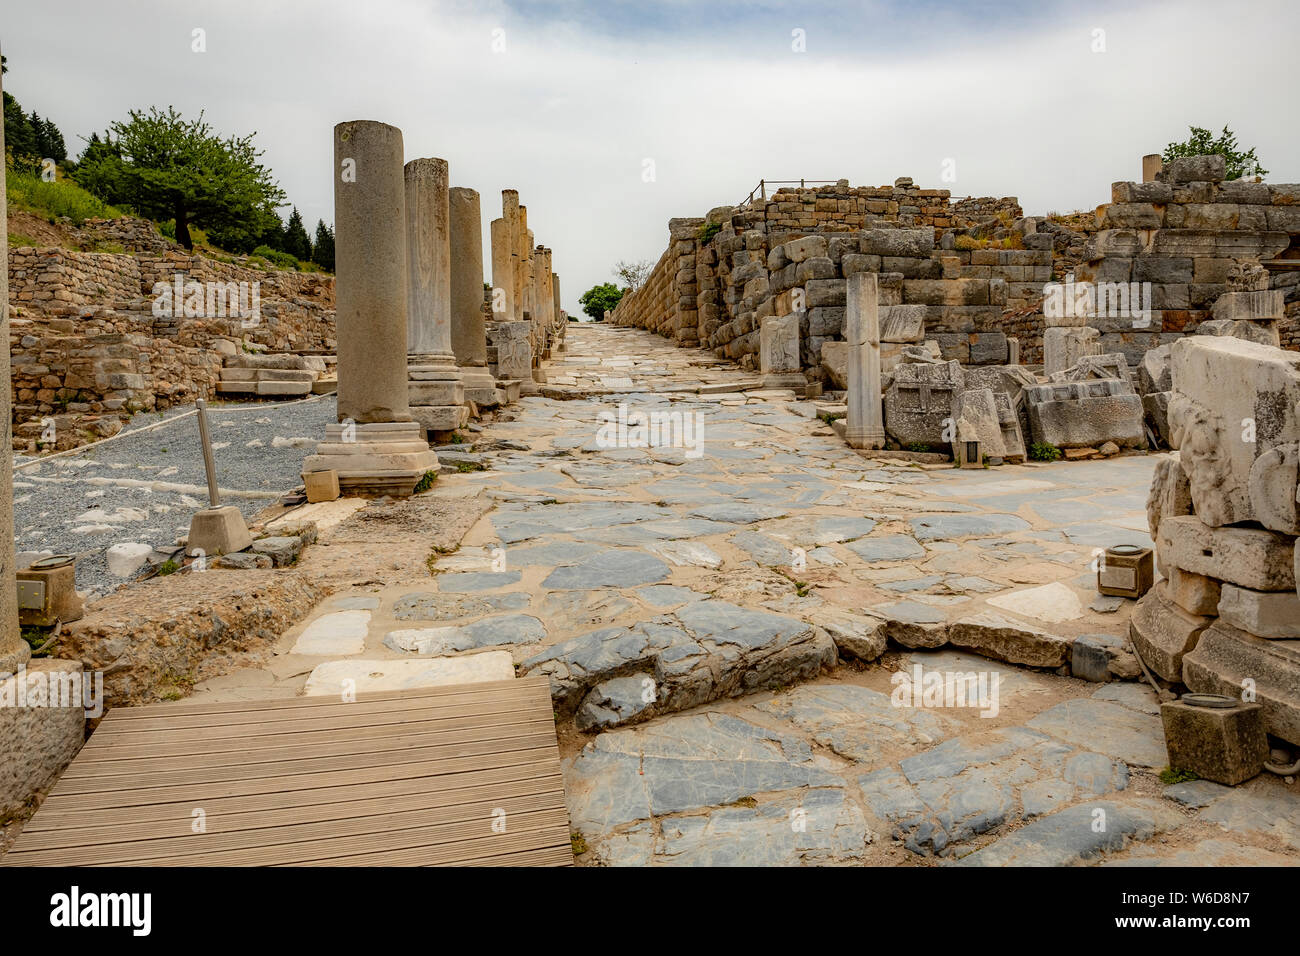 Les ruines de l'ancienne ville romaine et grecque d'Ephèse, une fois qu'un des principaux ports de l'empire romain, et situé dans la province d'Izmir, Turquie Banque D'Images